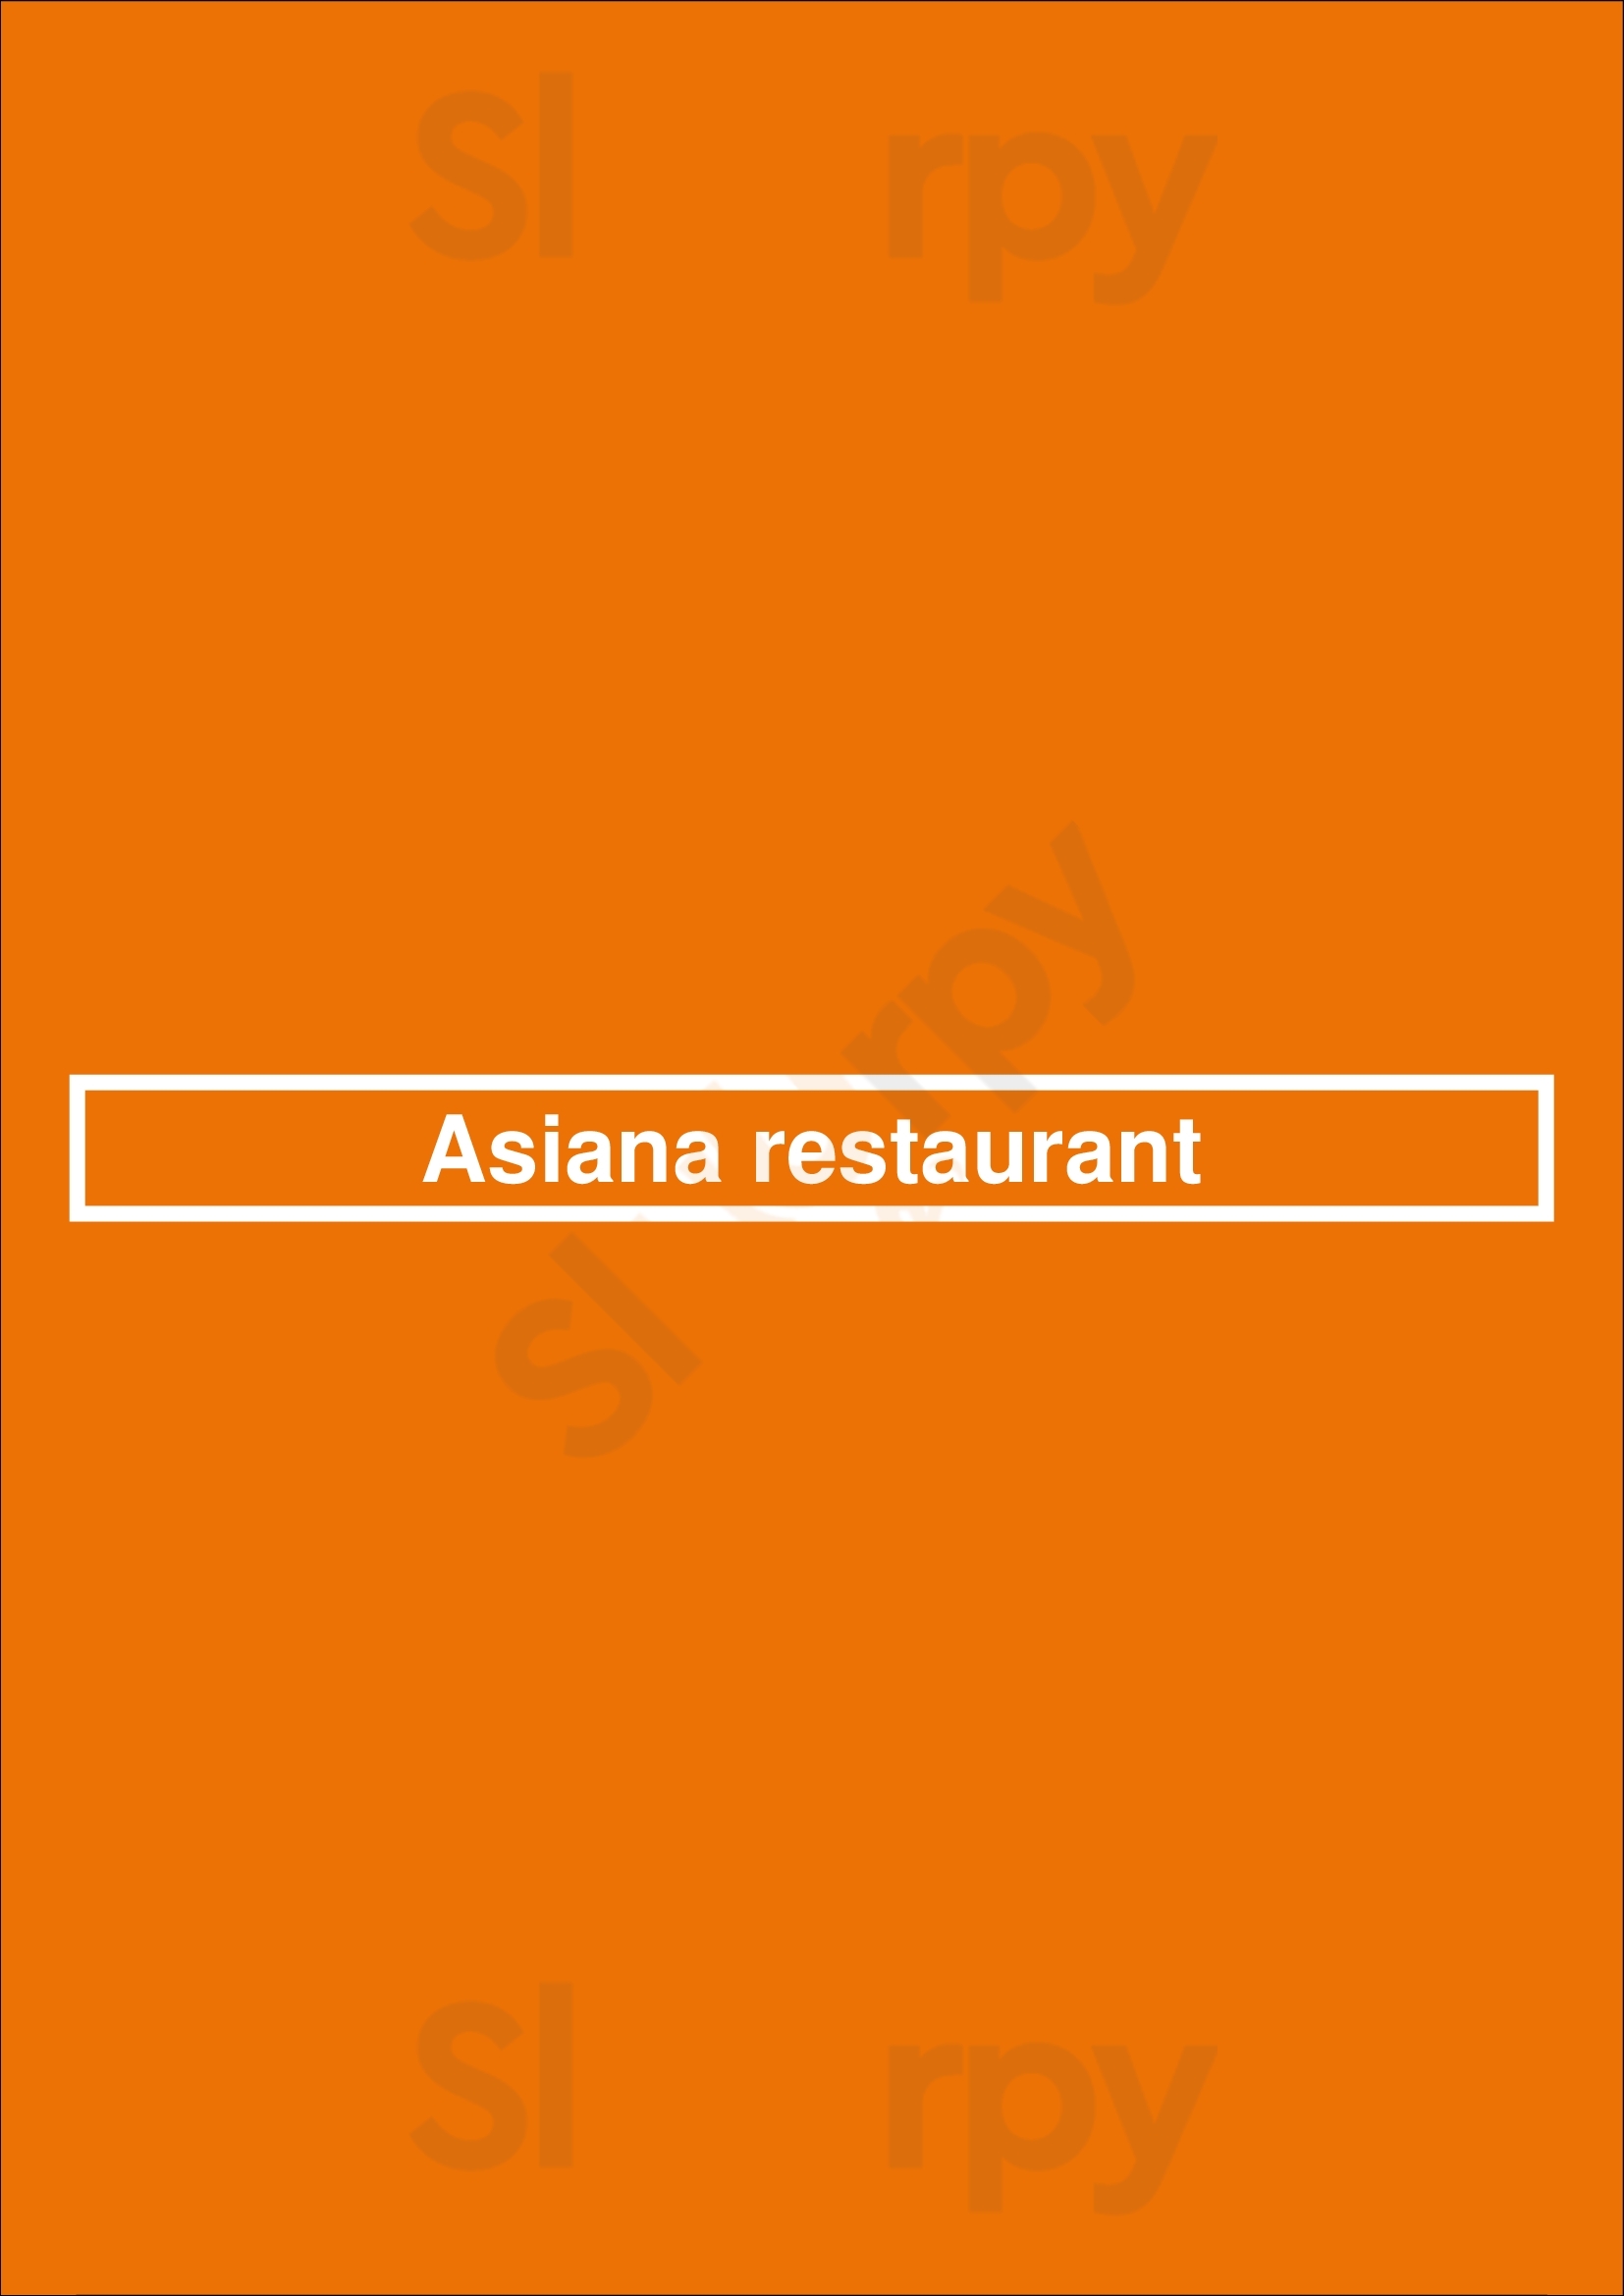 Asiana Restaurant Coventry Menu - 1